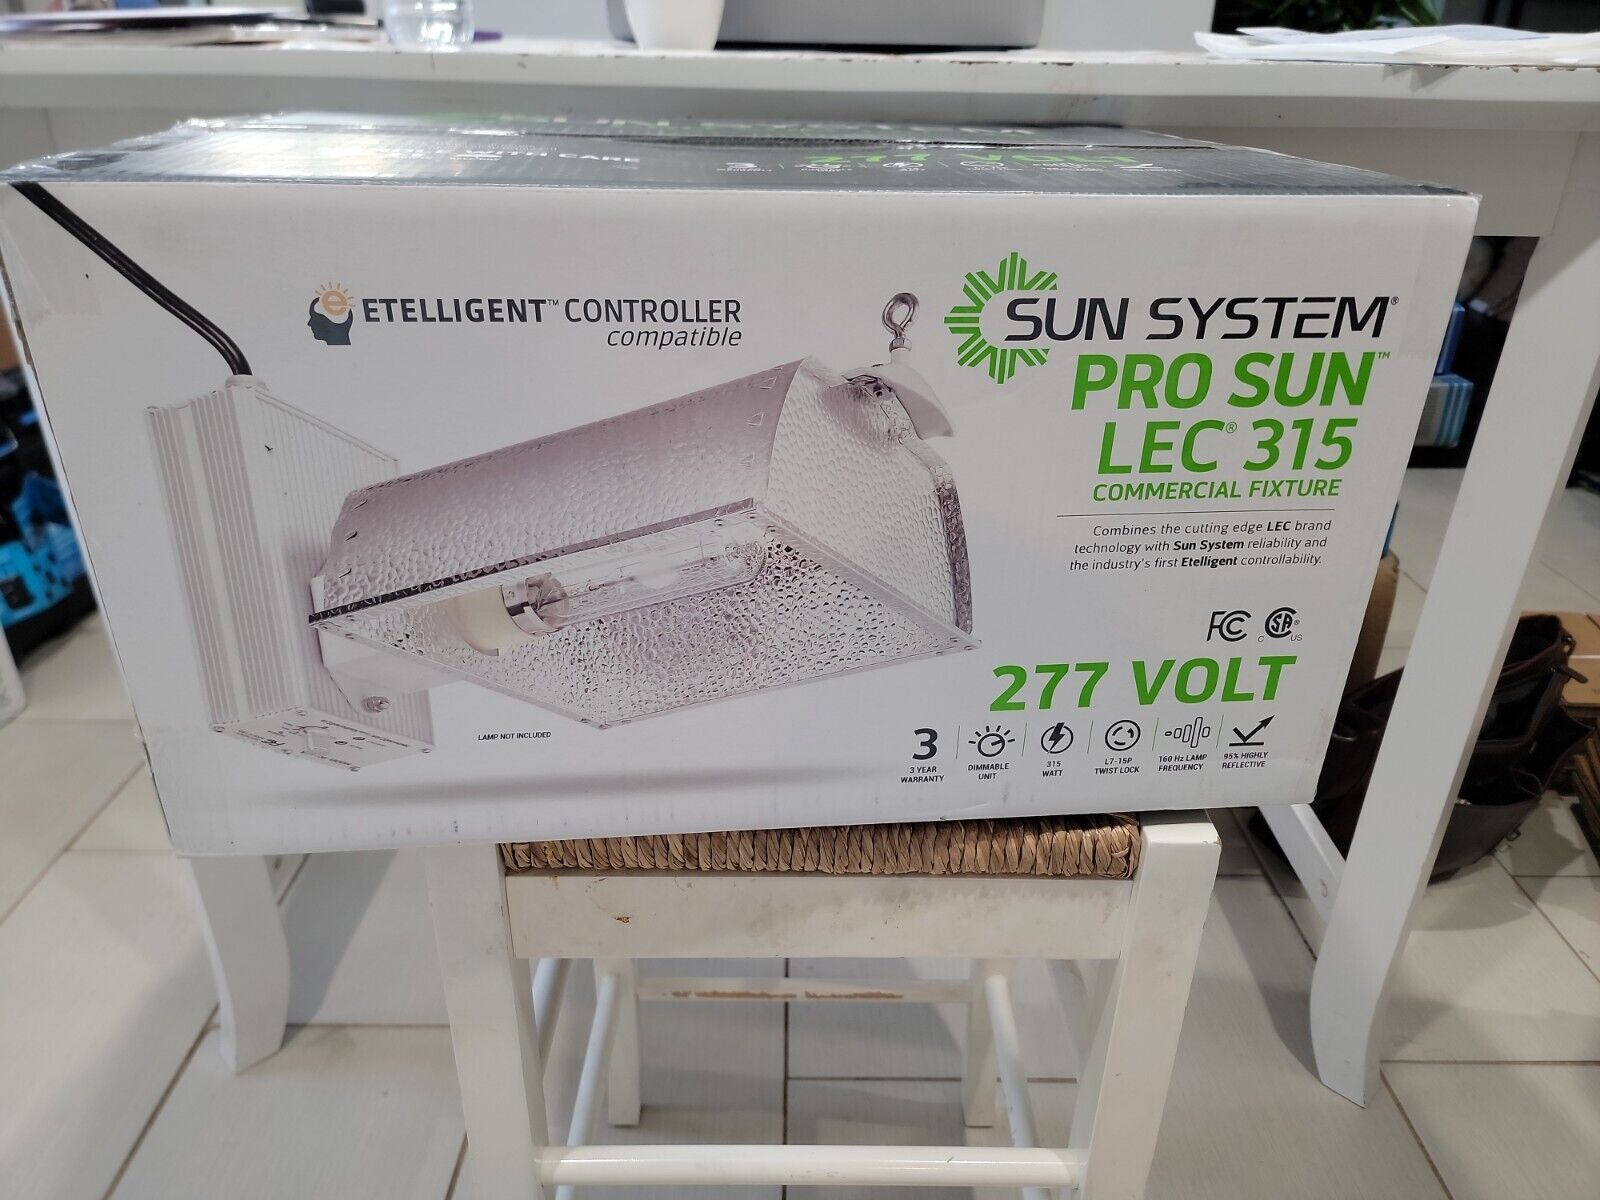 (LOT OF 2)Sun System Pro Sun LEC 315 277 Volt Etelligent Compatible - Lamp N/A